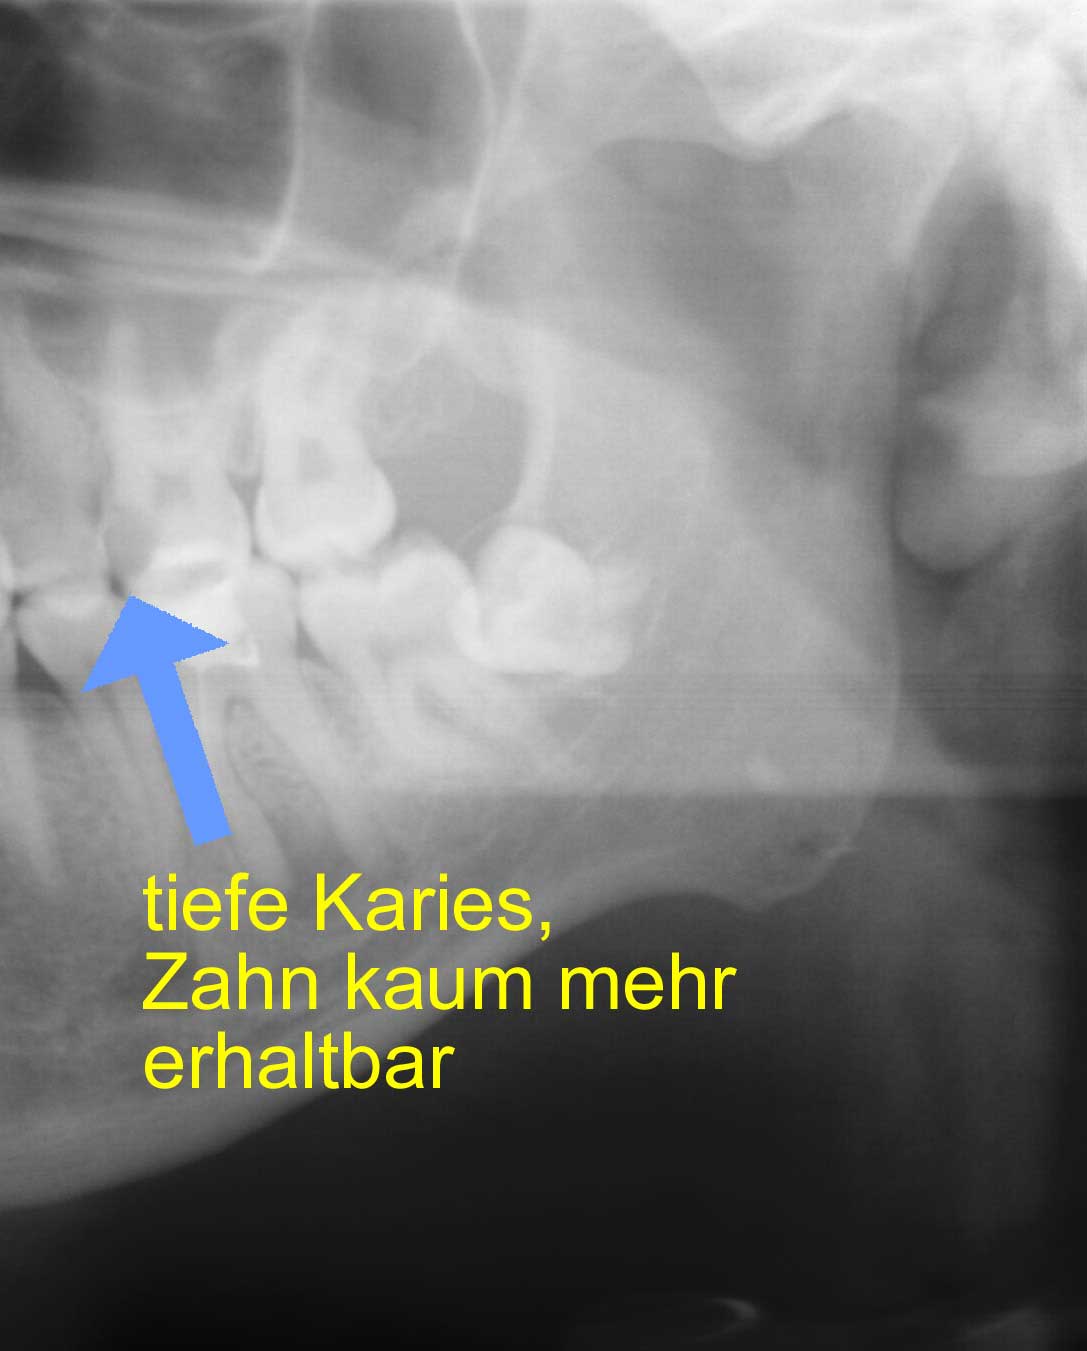 nicht erhaltbarer Zahn im Röntgenbild